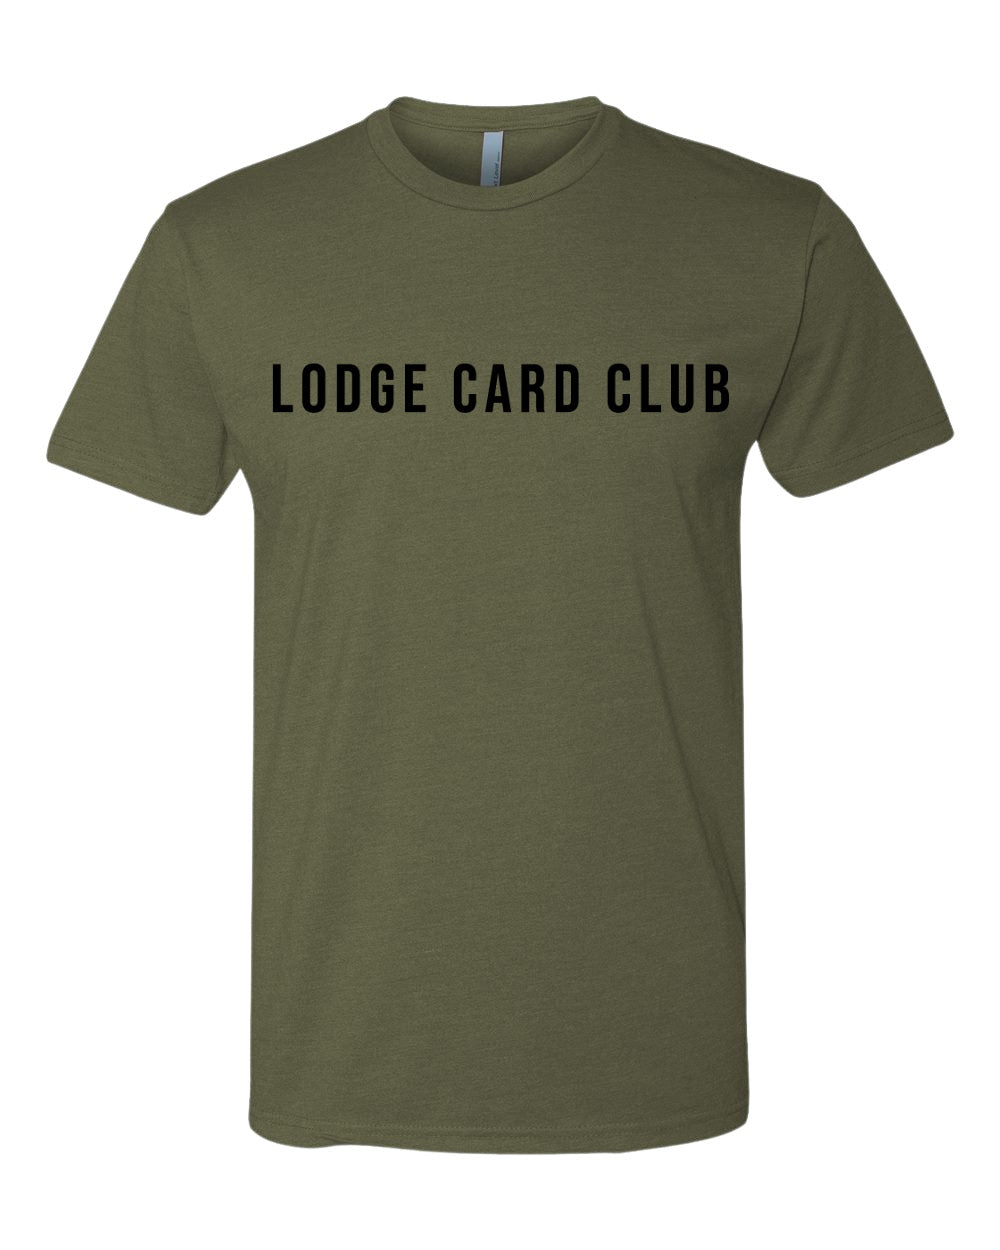 LCC Text Shirt - Military Green